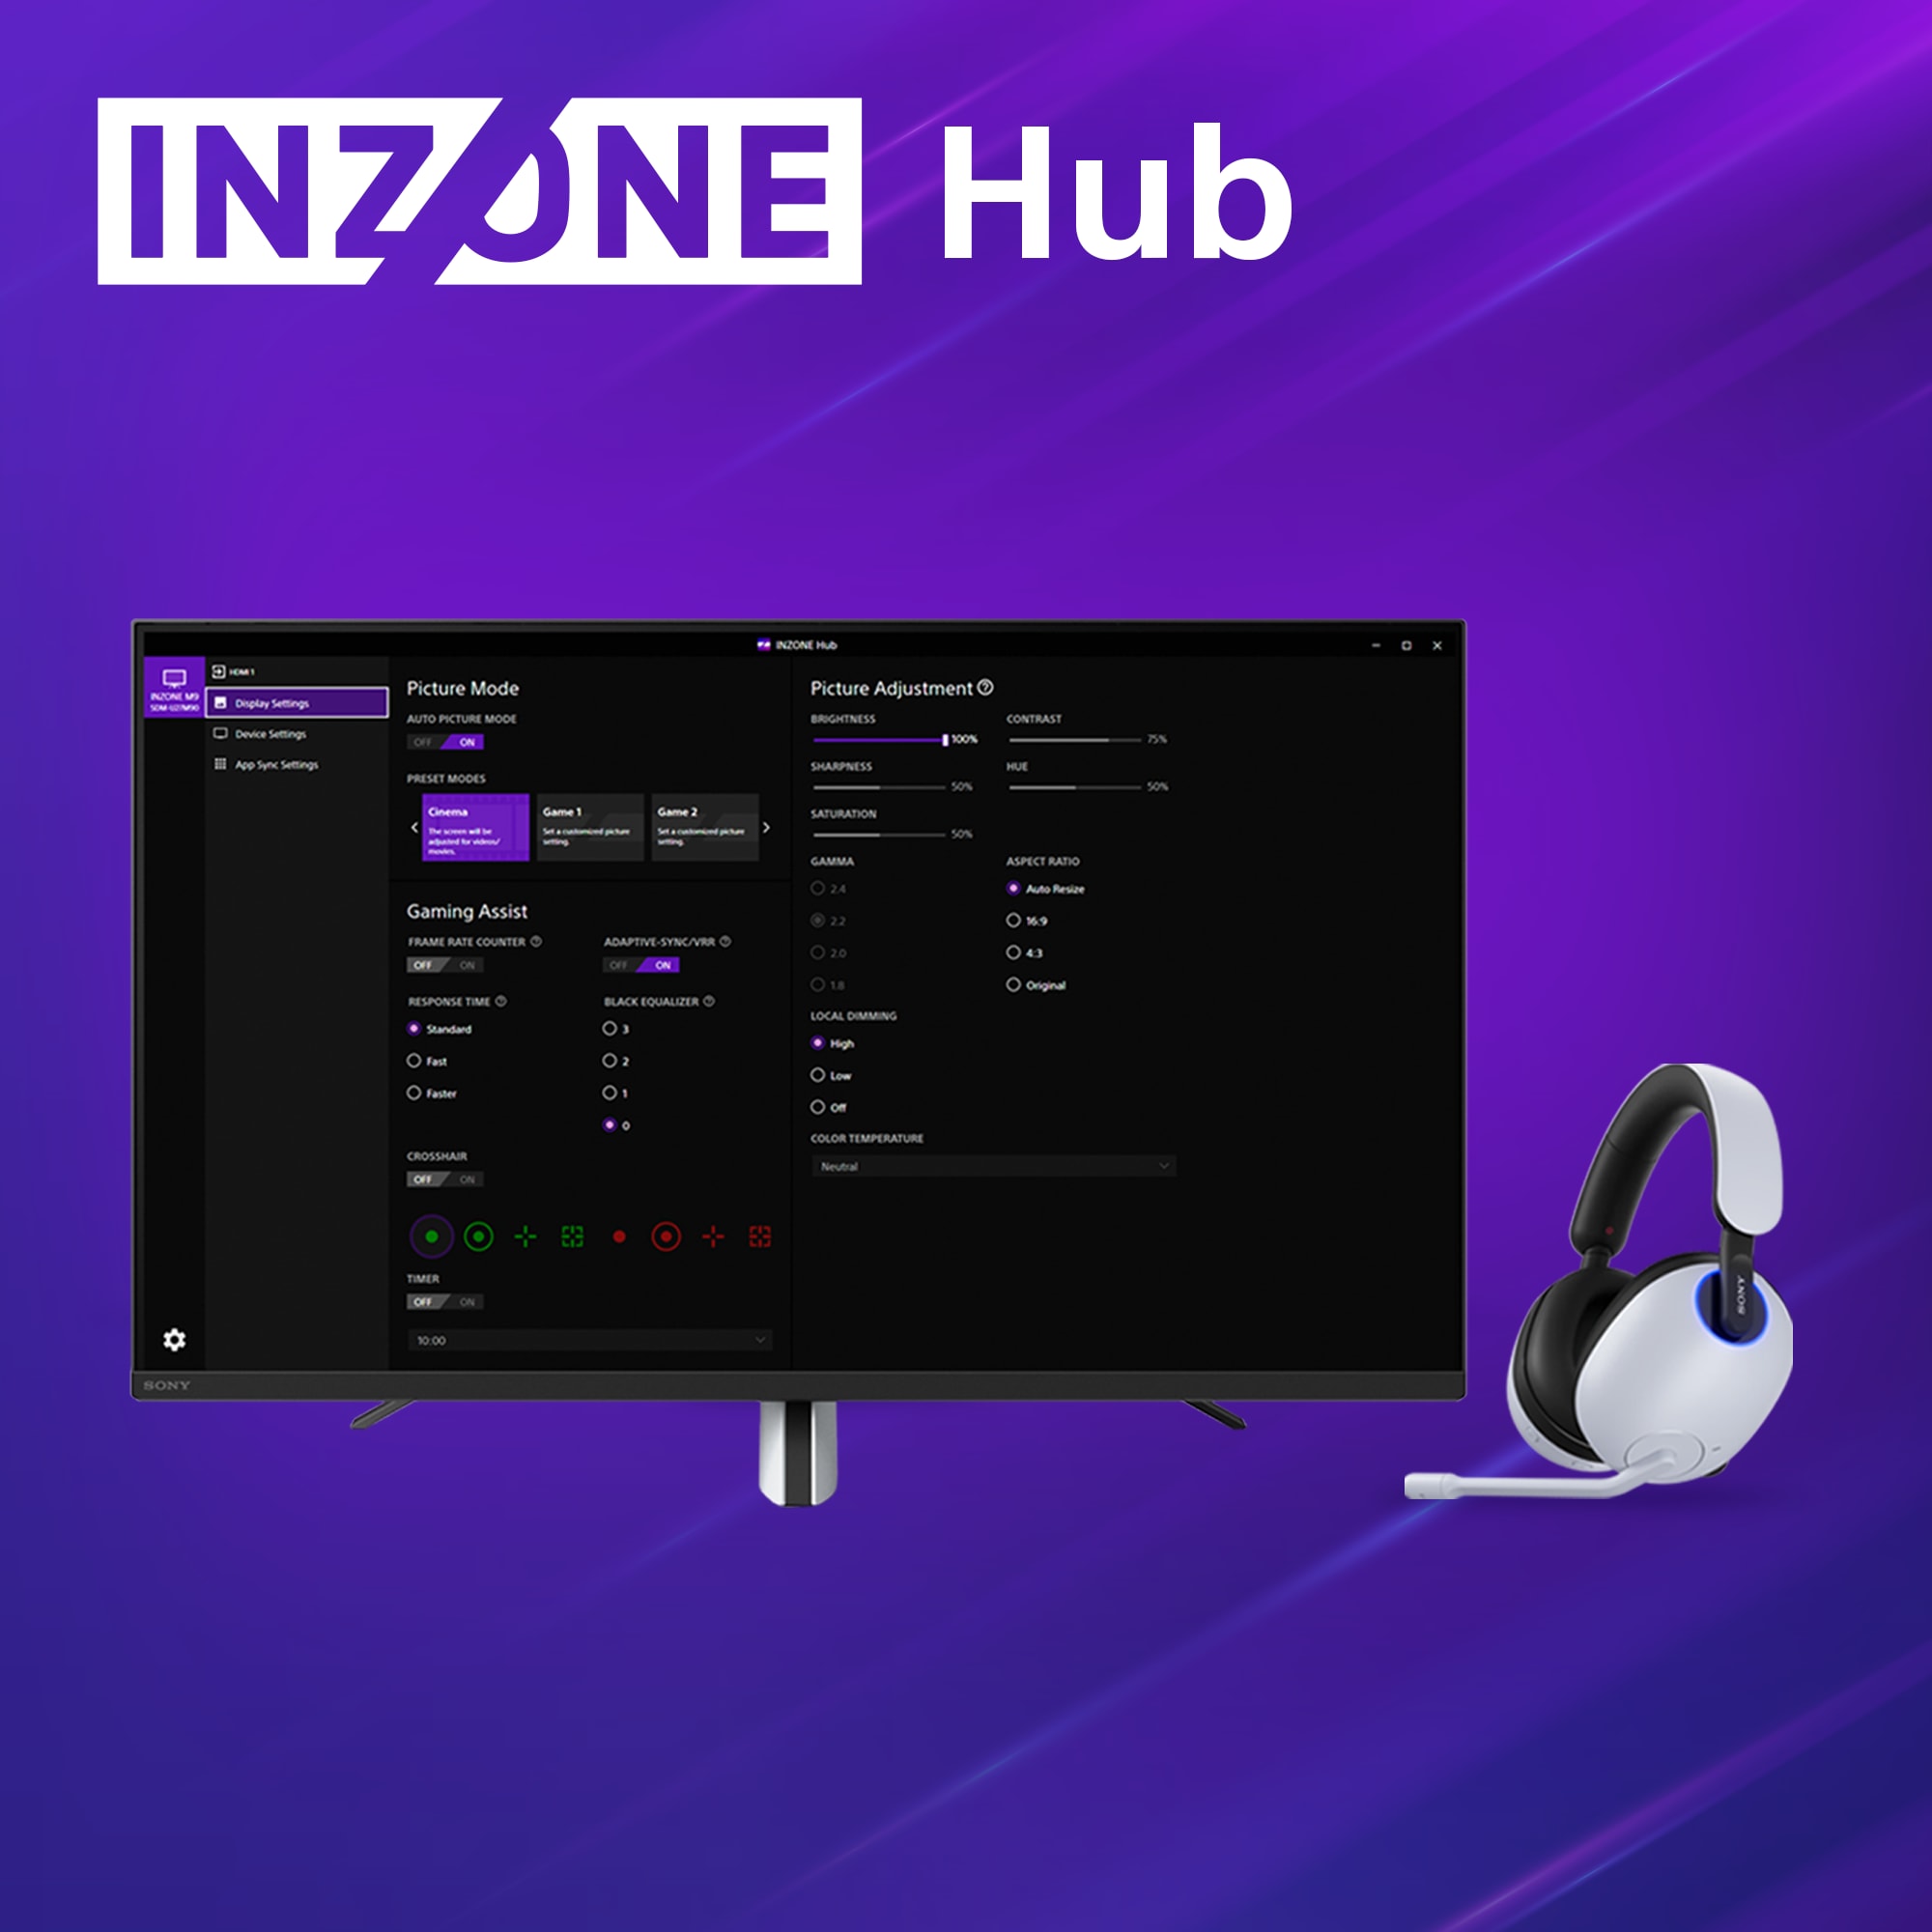 Sony Inzone HUB, spillhodesett og skjerm på blå og lilla bakgrunn